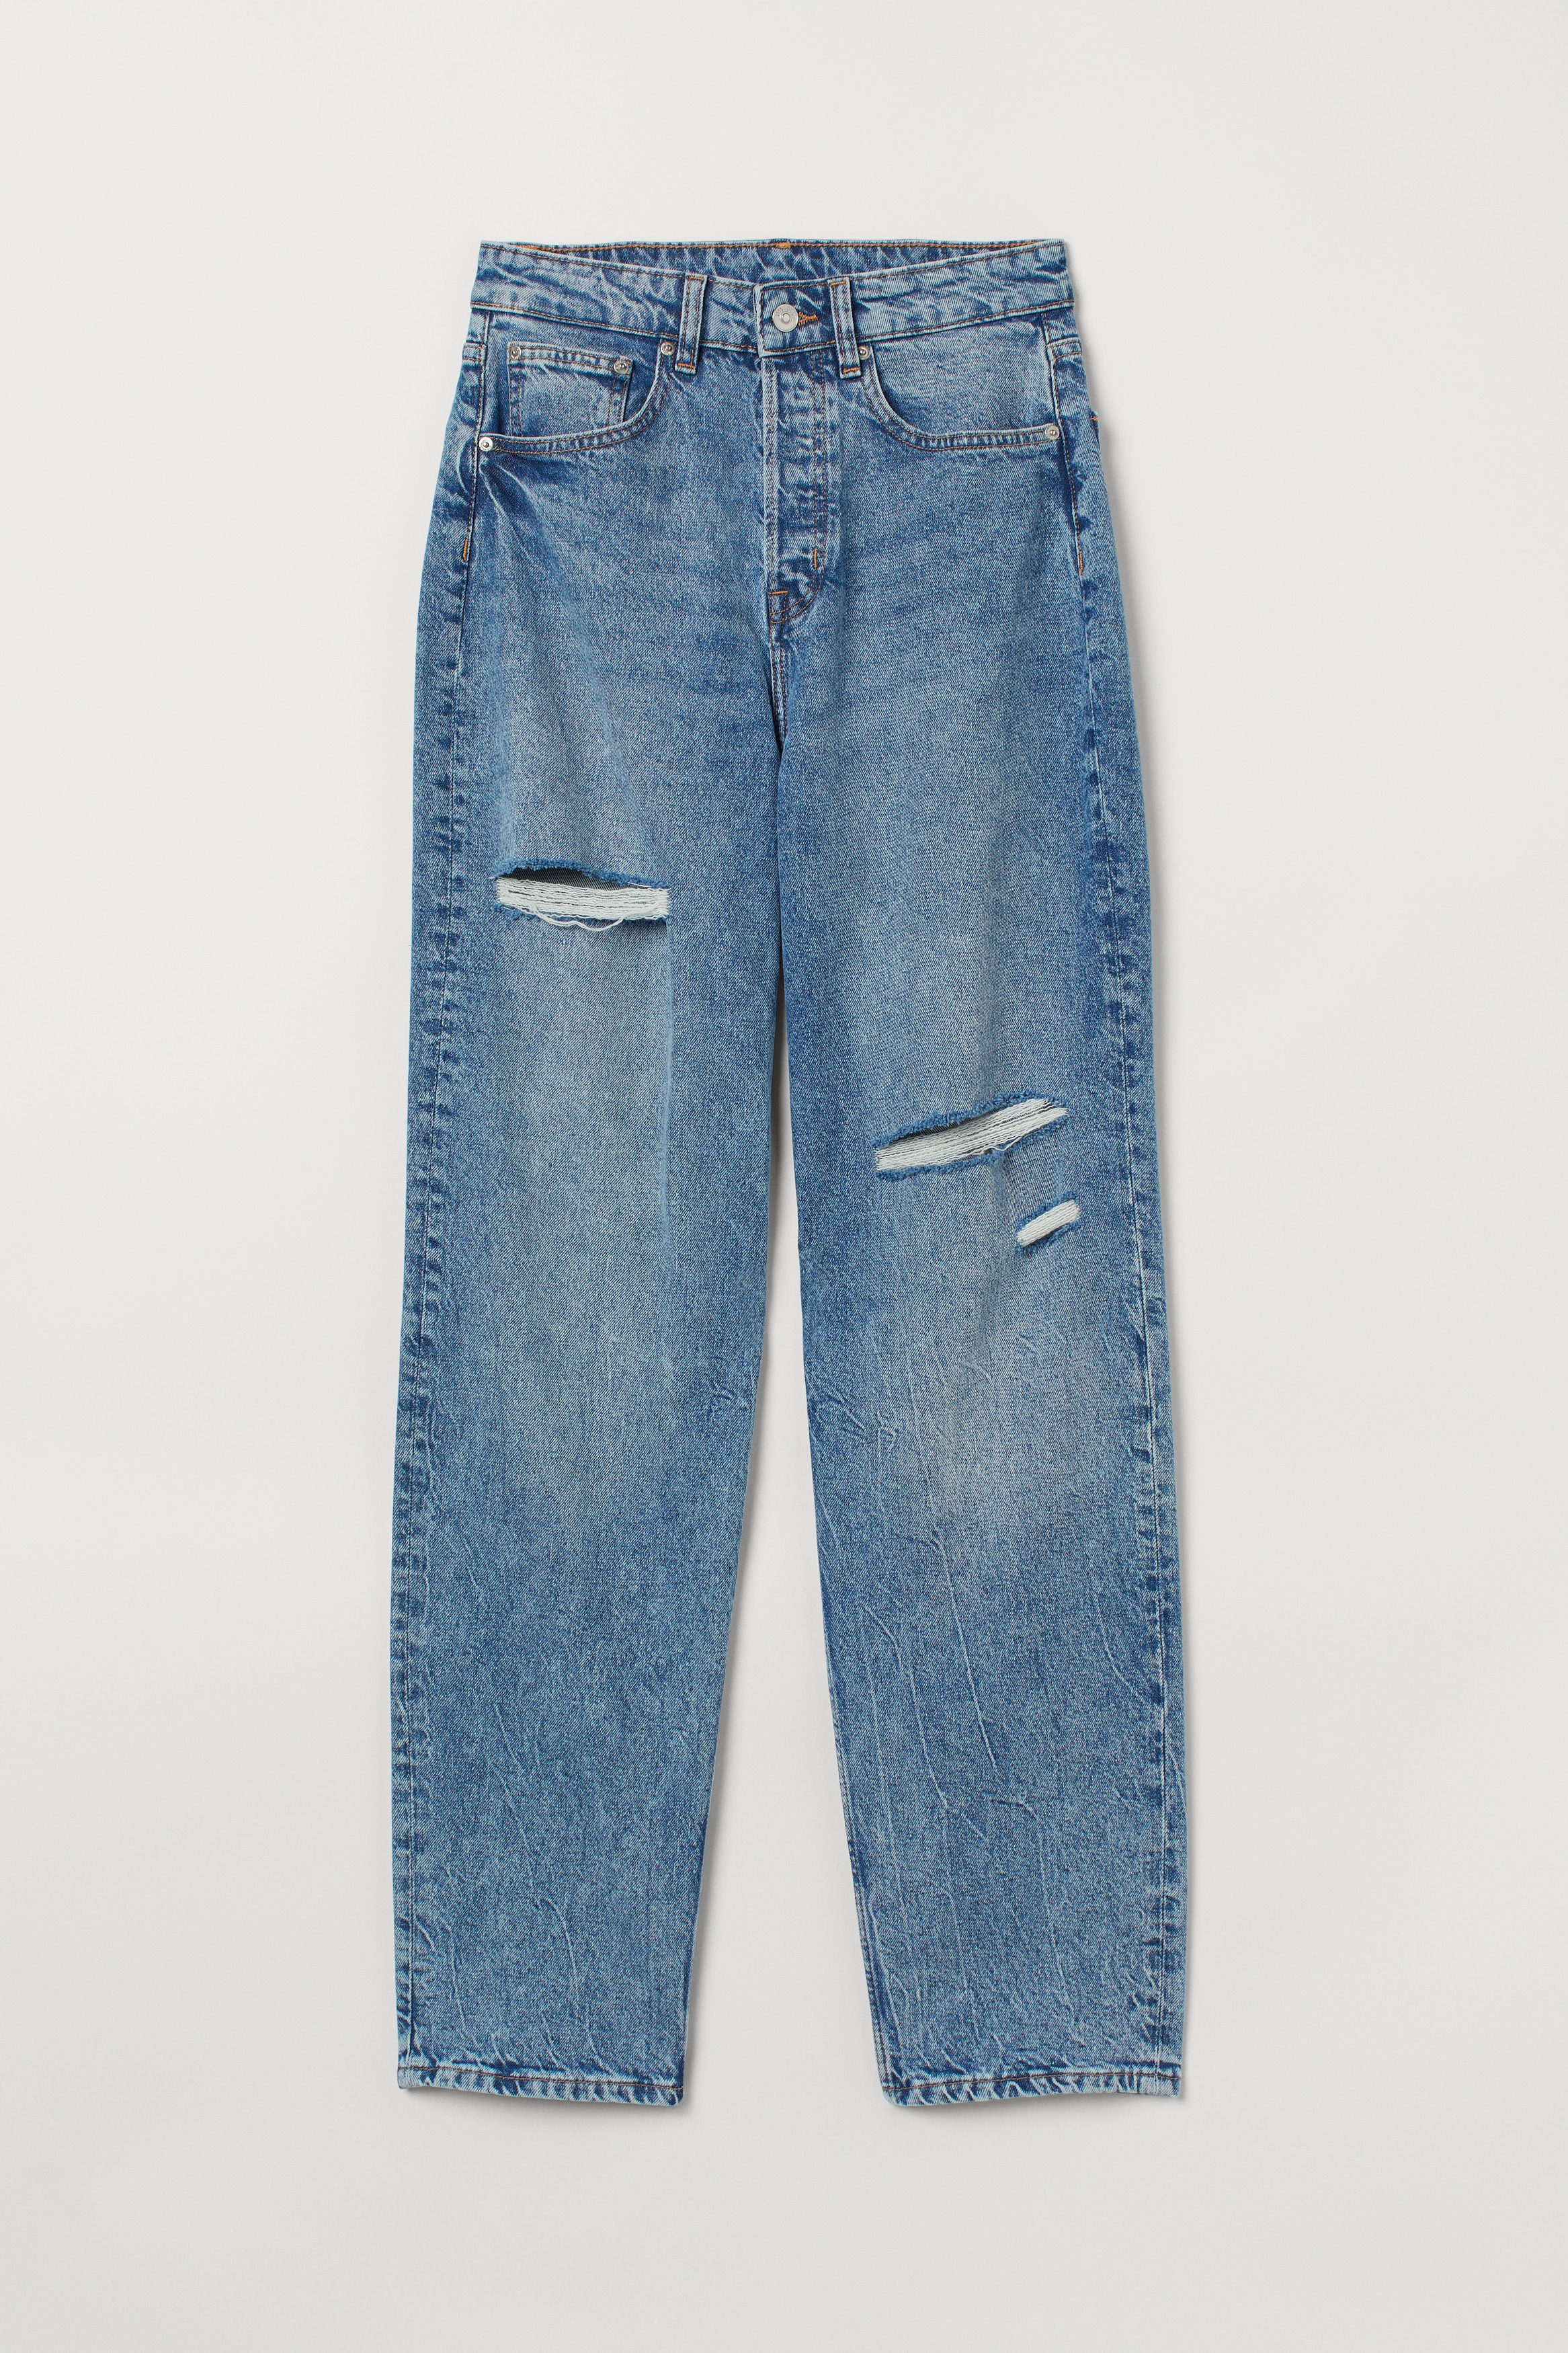 Billede af H&M 90s Straight High Jeans Denimblå, jeans. Farve: Denim blue I størrelse 34